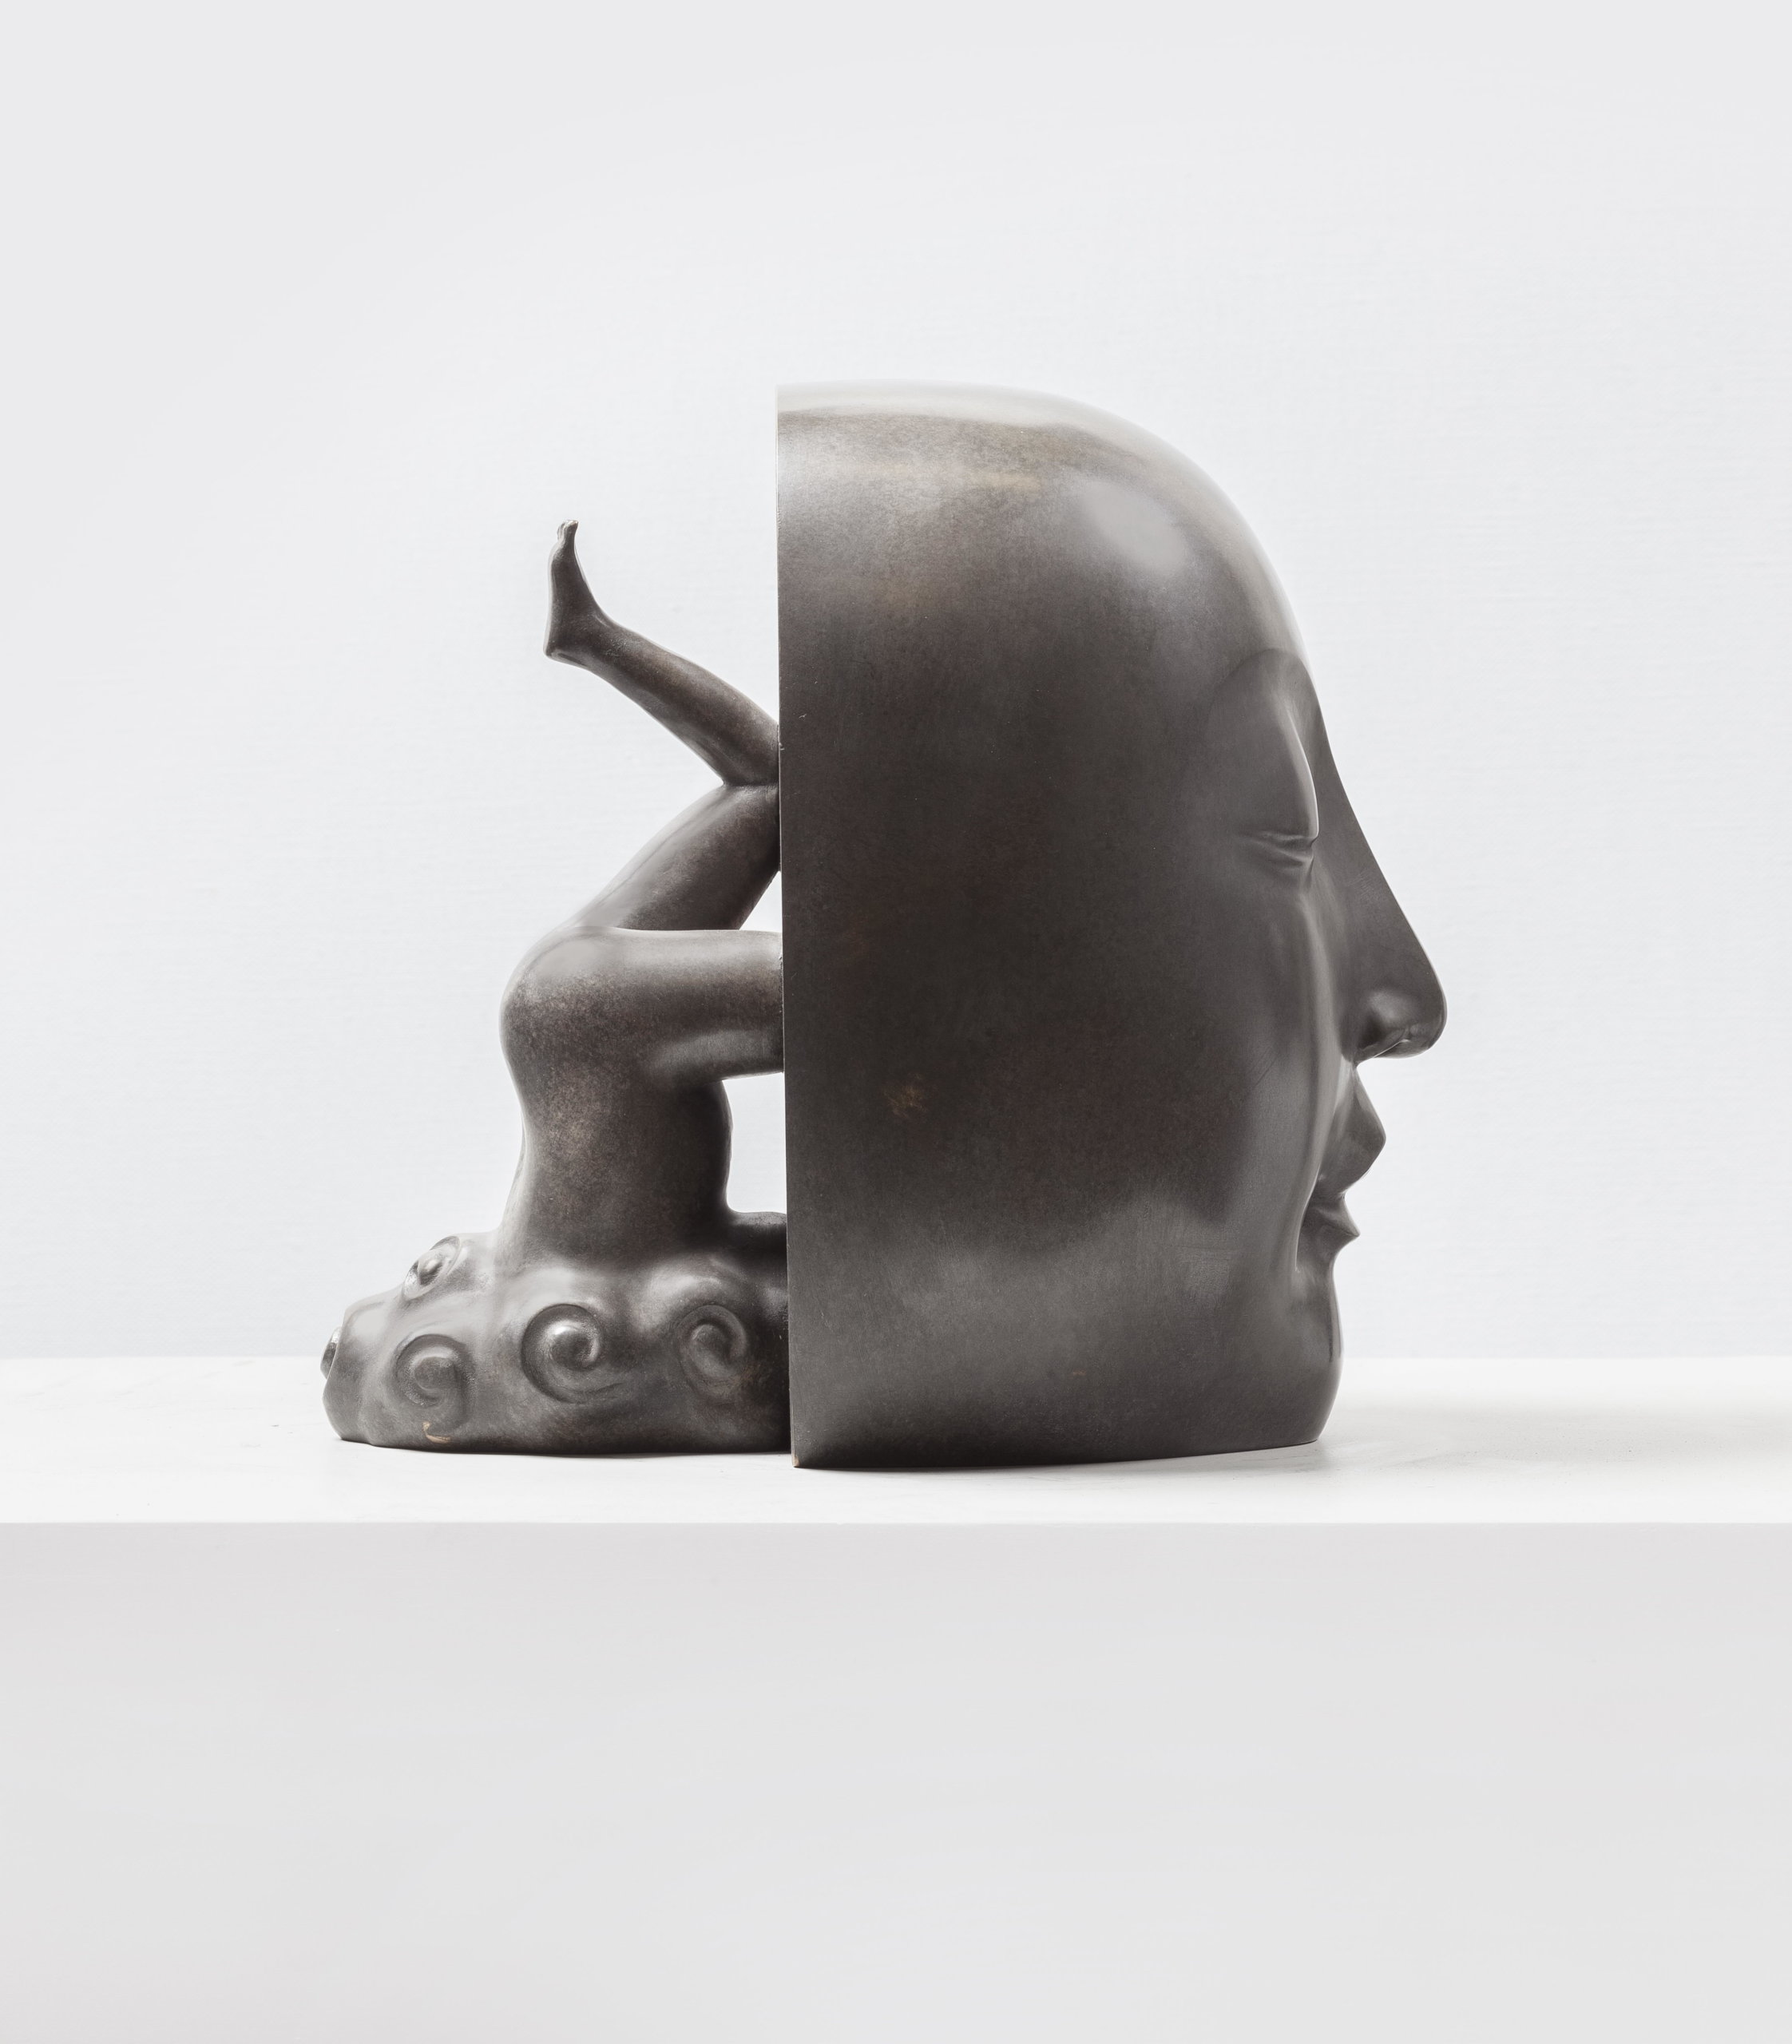 Guan Wei, Salvation No.2, 2015, bronze sculpture, ed of 5, 28x23x29cm